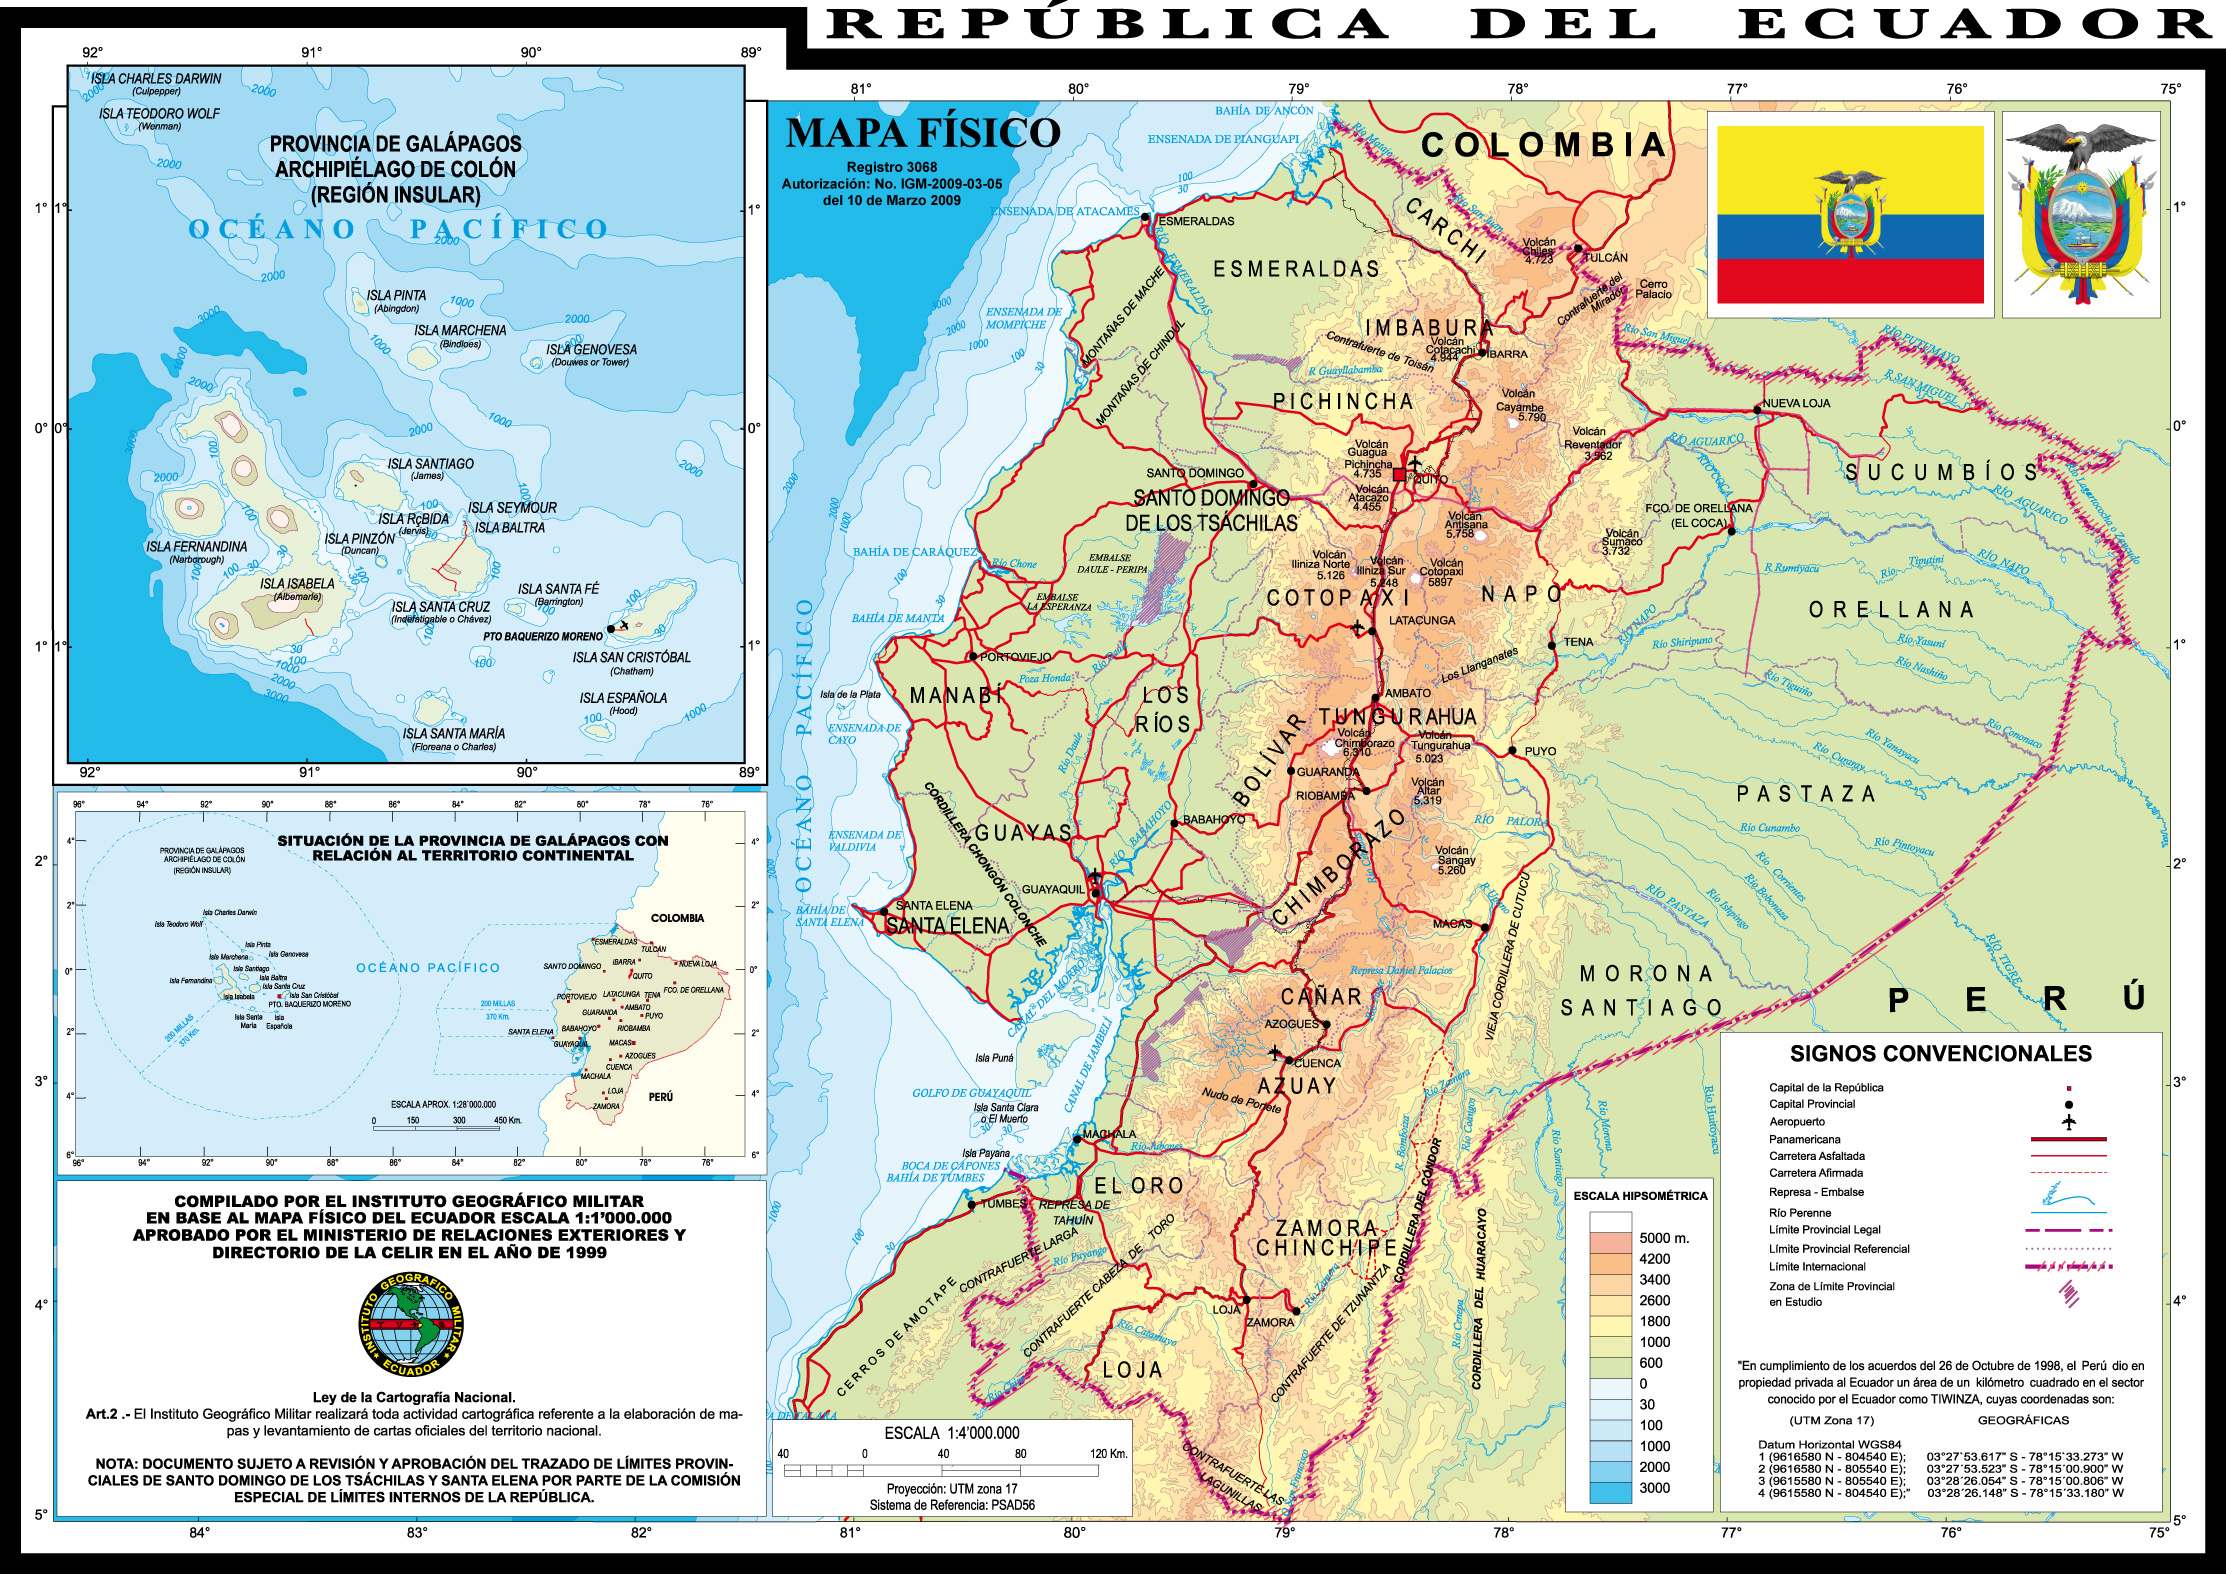 Maps of Ecuador